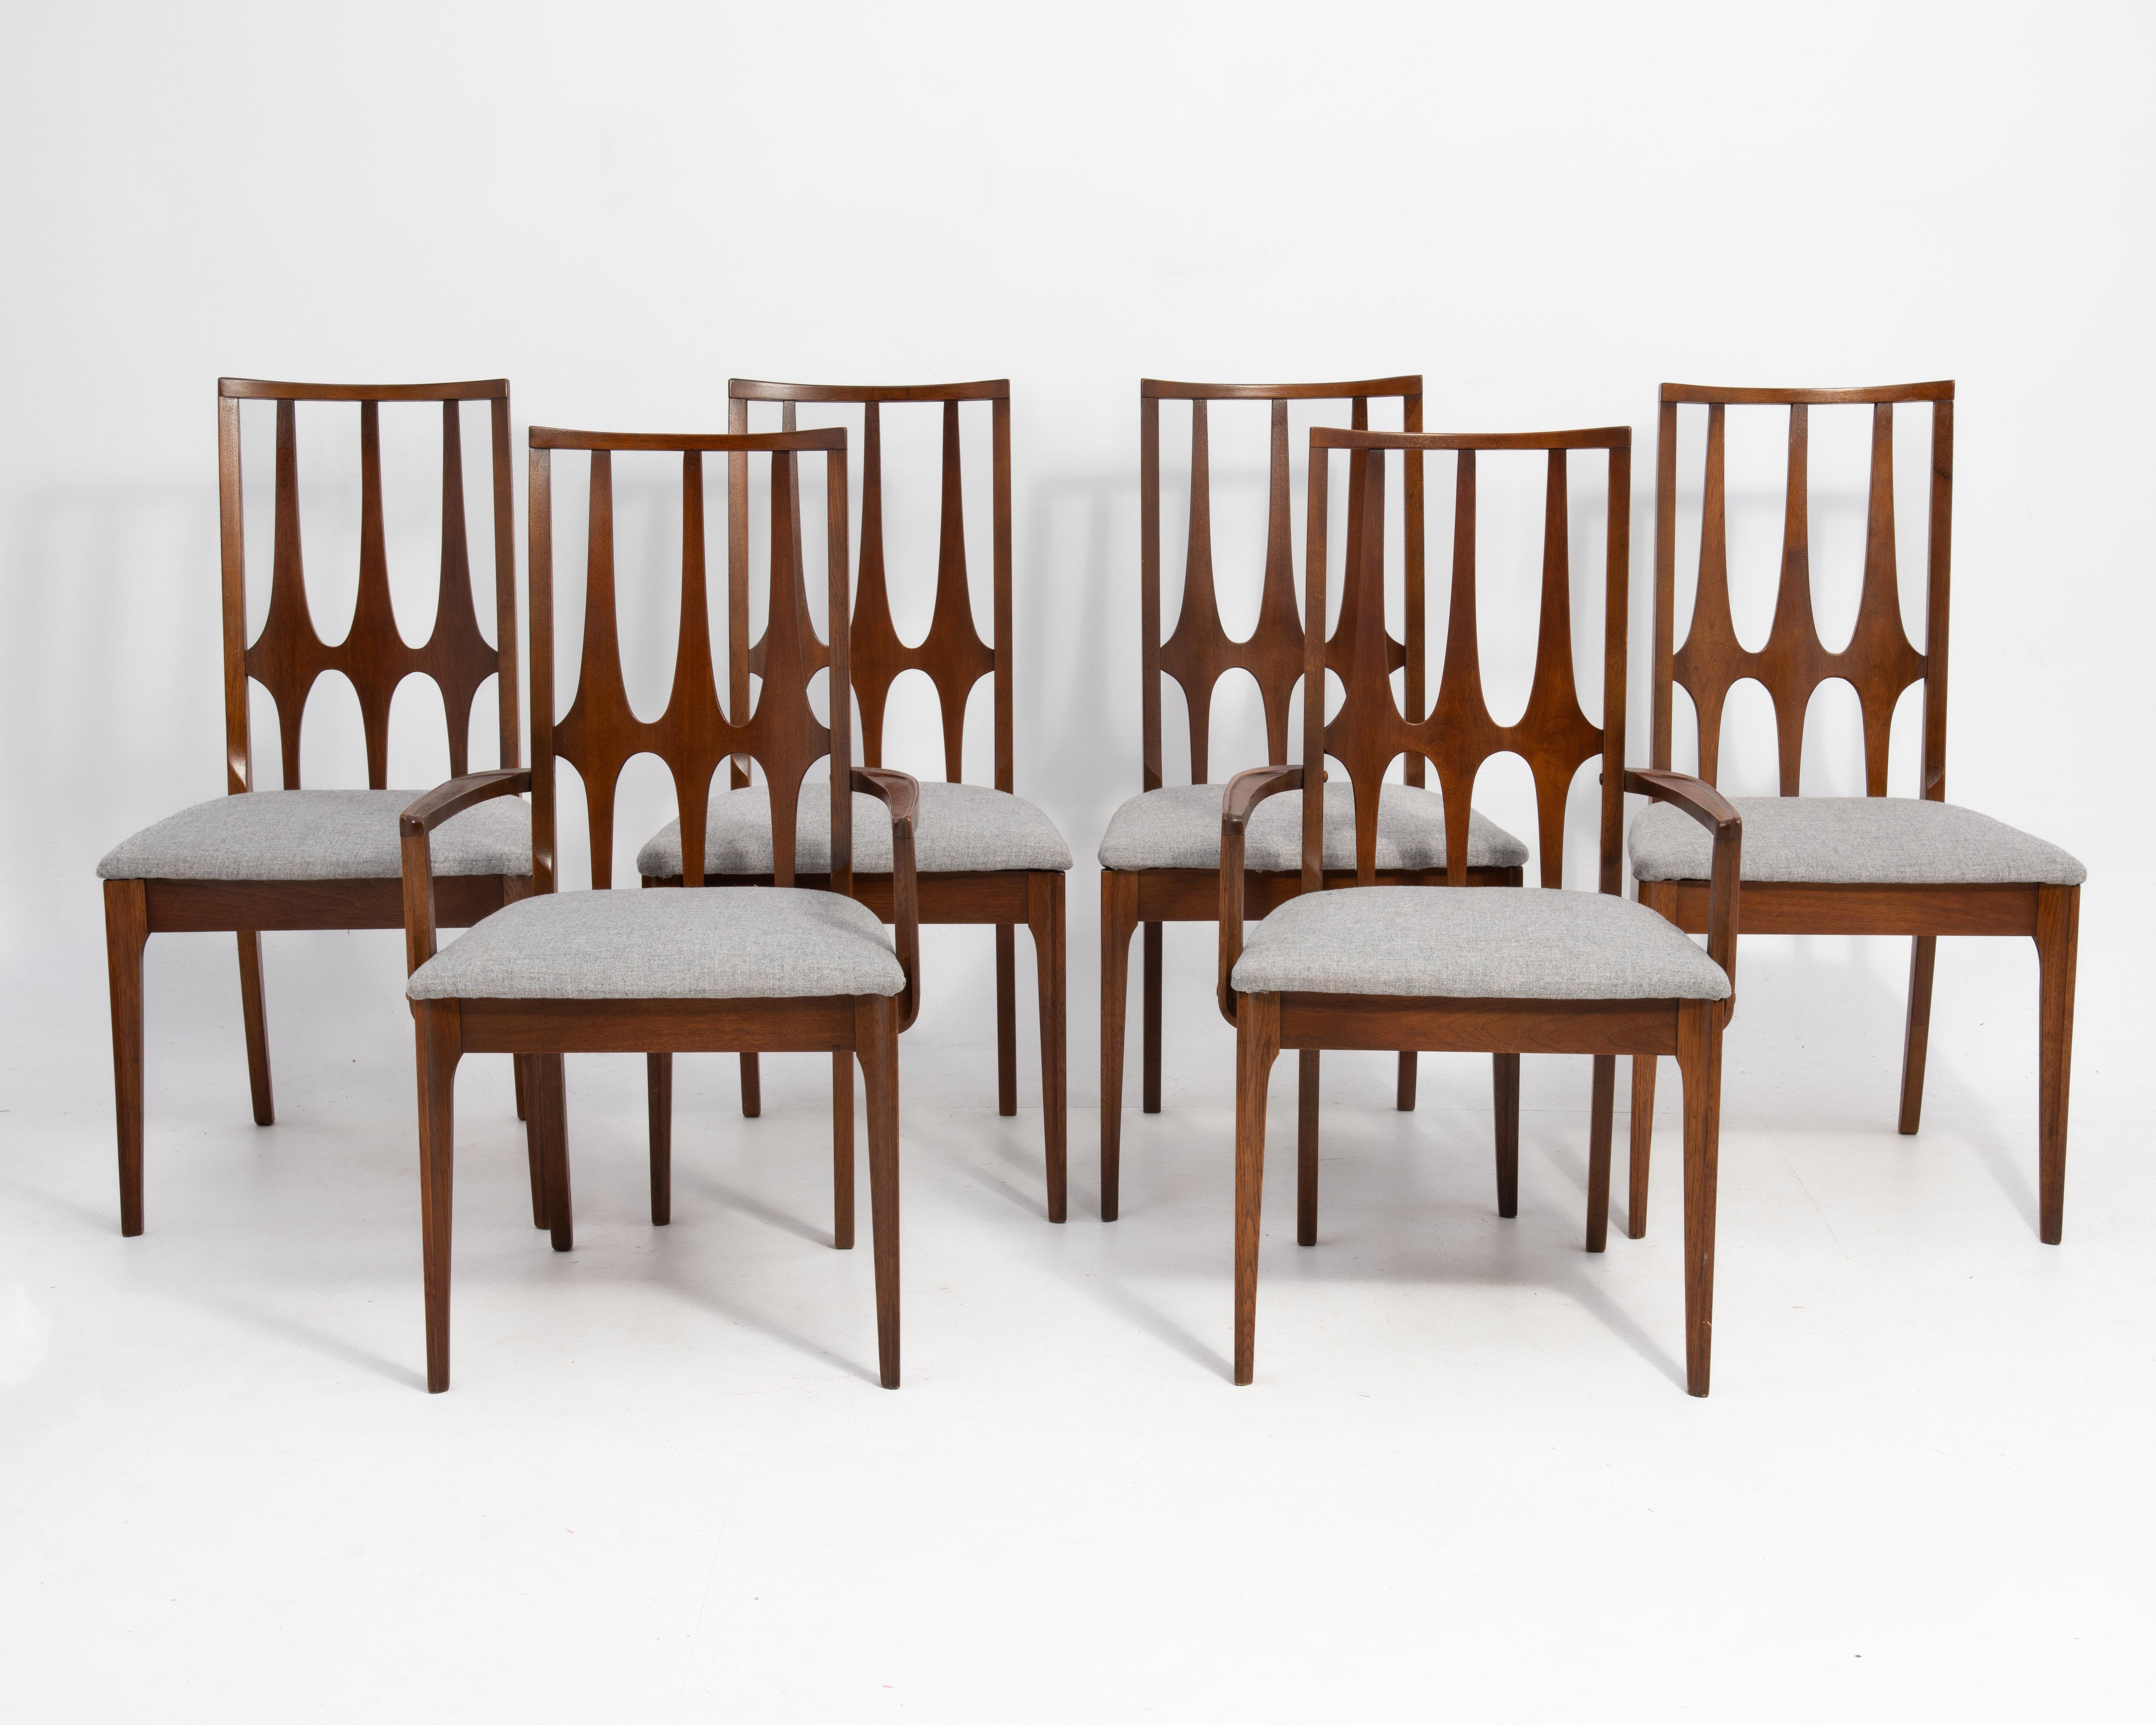 Ensemble de six chaises de salle à manger à haut dossier Broyhill Brasilia. Deux fauteuils et quatre chaises d'appoint. La plupart des chaises sont marquées.

Les fauteuils mesurent H 38